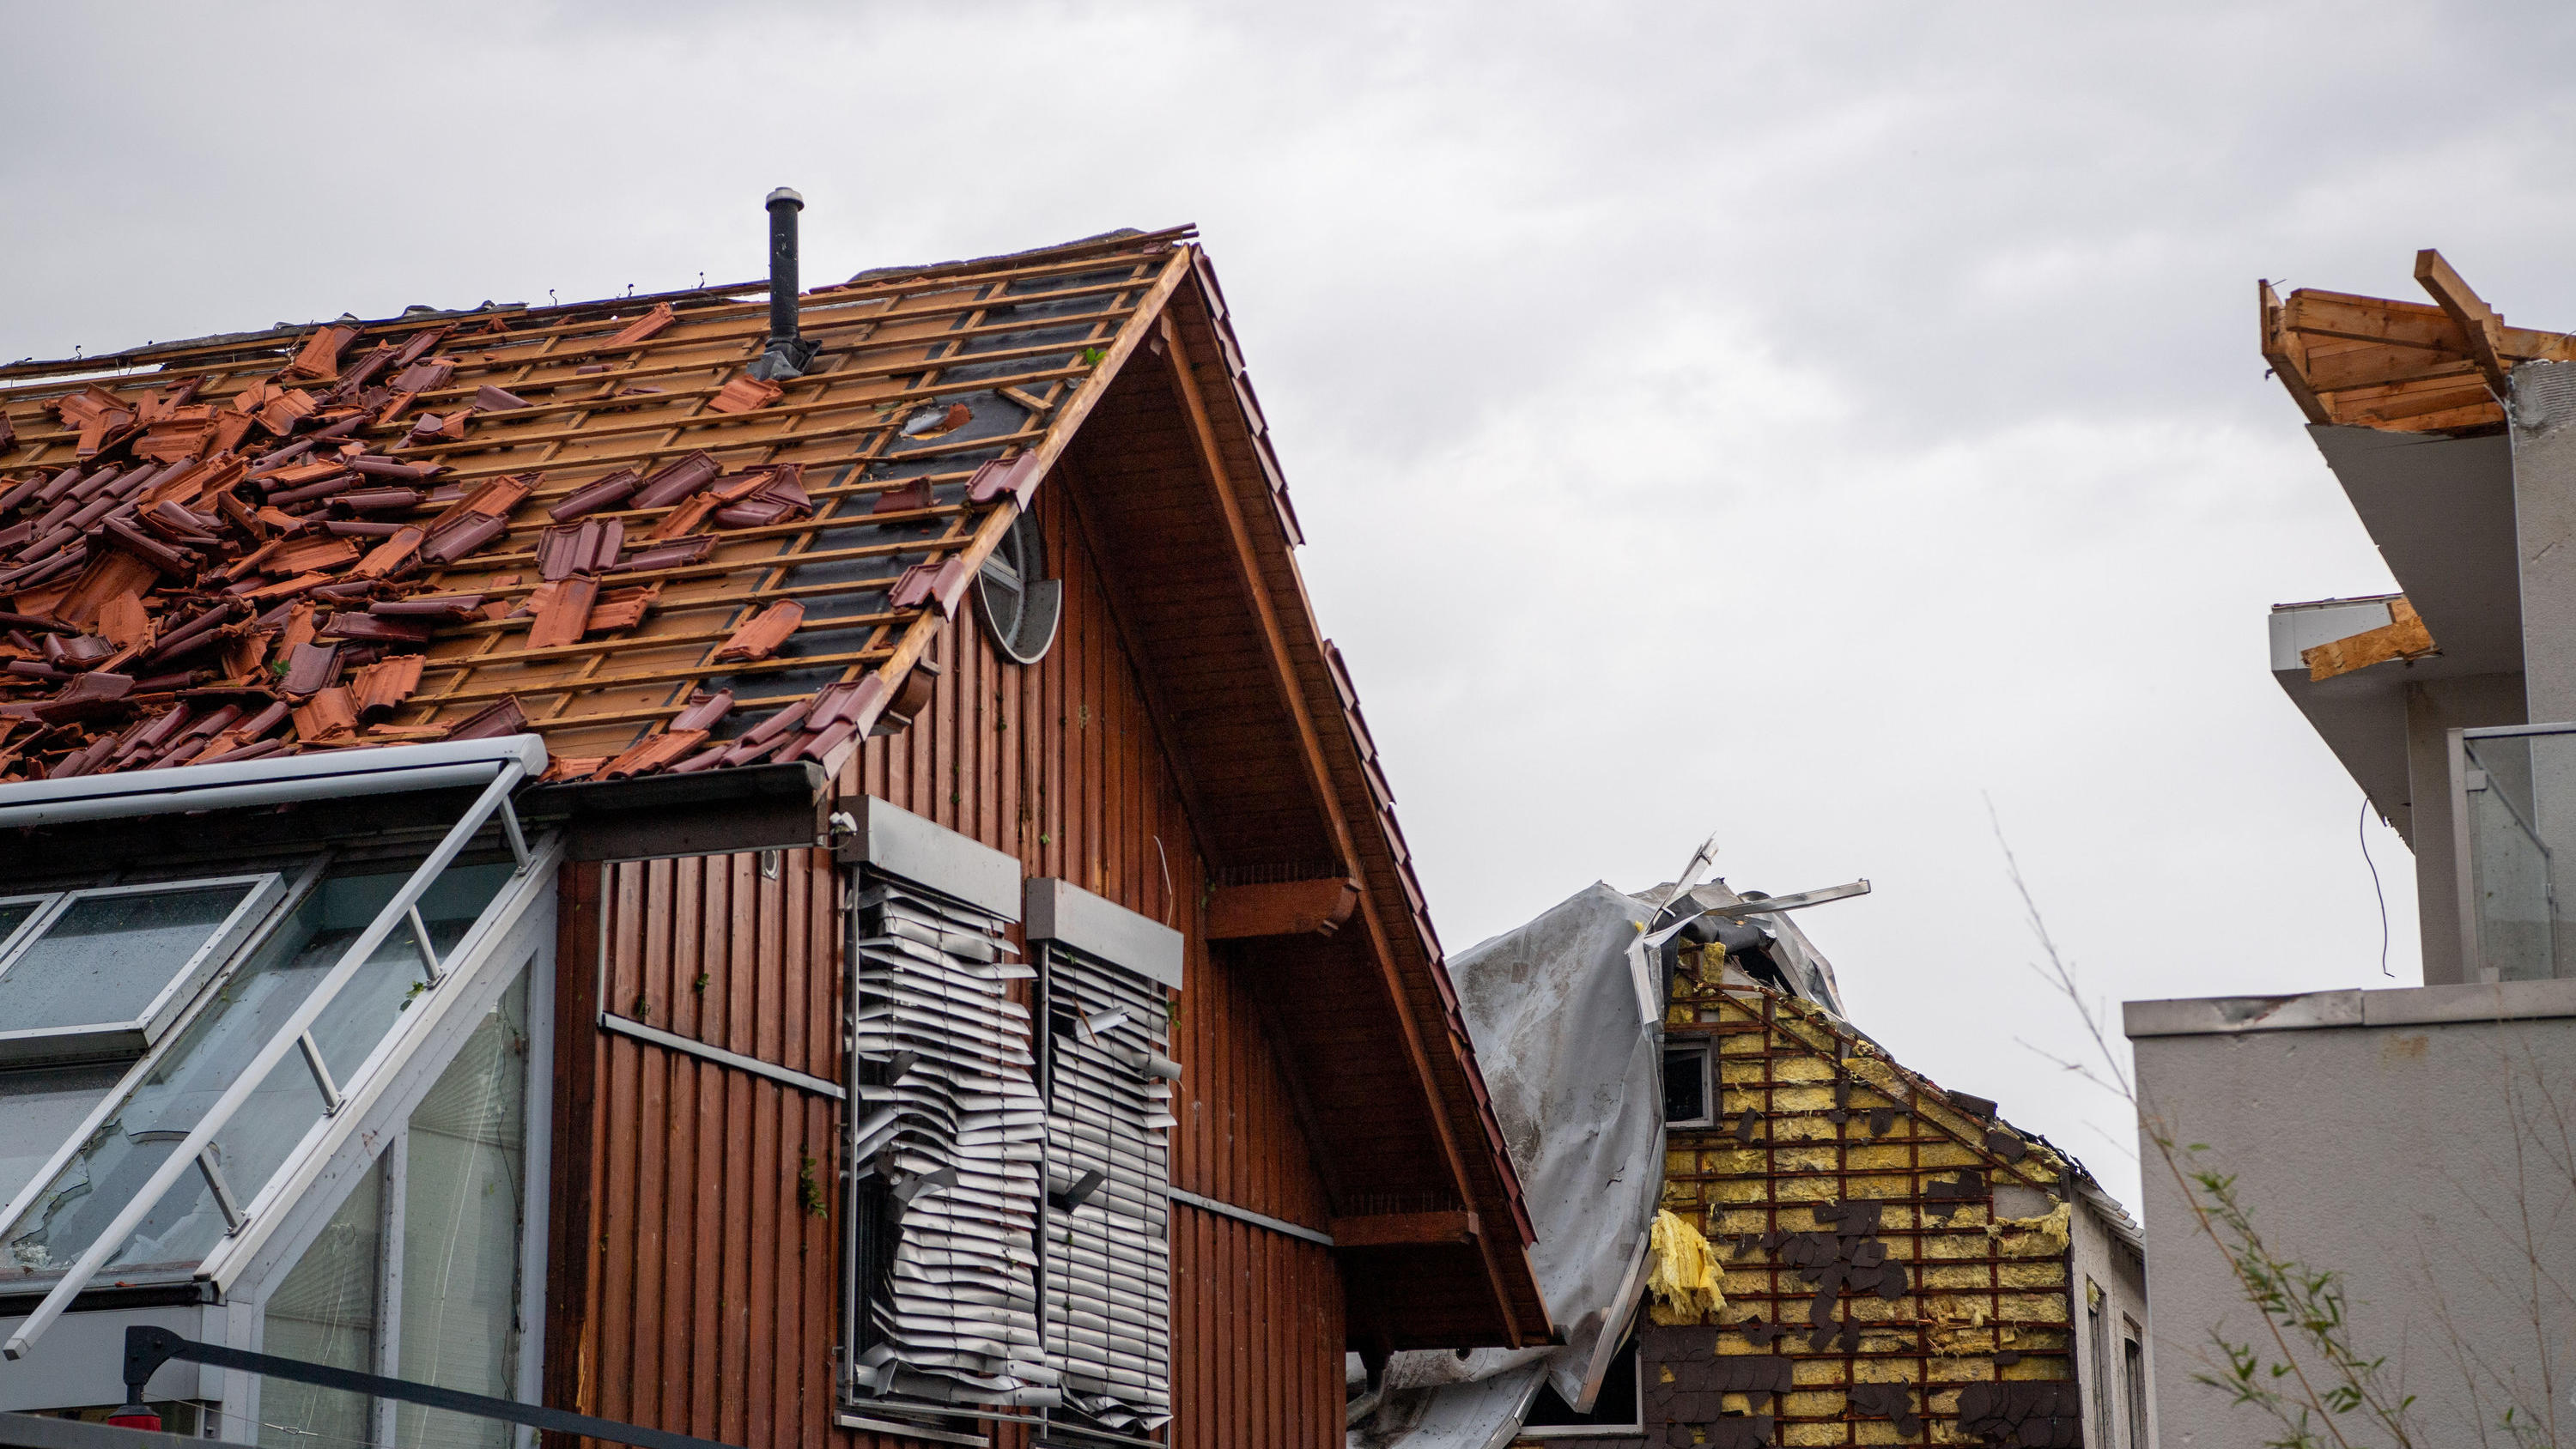 20.05.2022, Nordrhein-Westfalen, Paderborn: Die Dachhaut eines Hauses wurde über die Front geweht. Ein Unwetter hat auch in Paderborn große Schäden angerichtet. Foto: Lino Mirgeler/dpa +++ dpa-Bildfunk +++